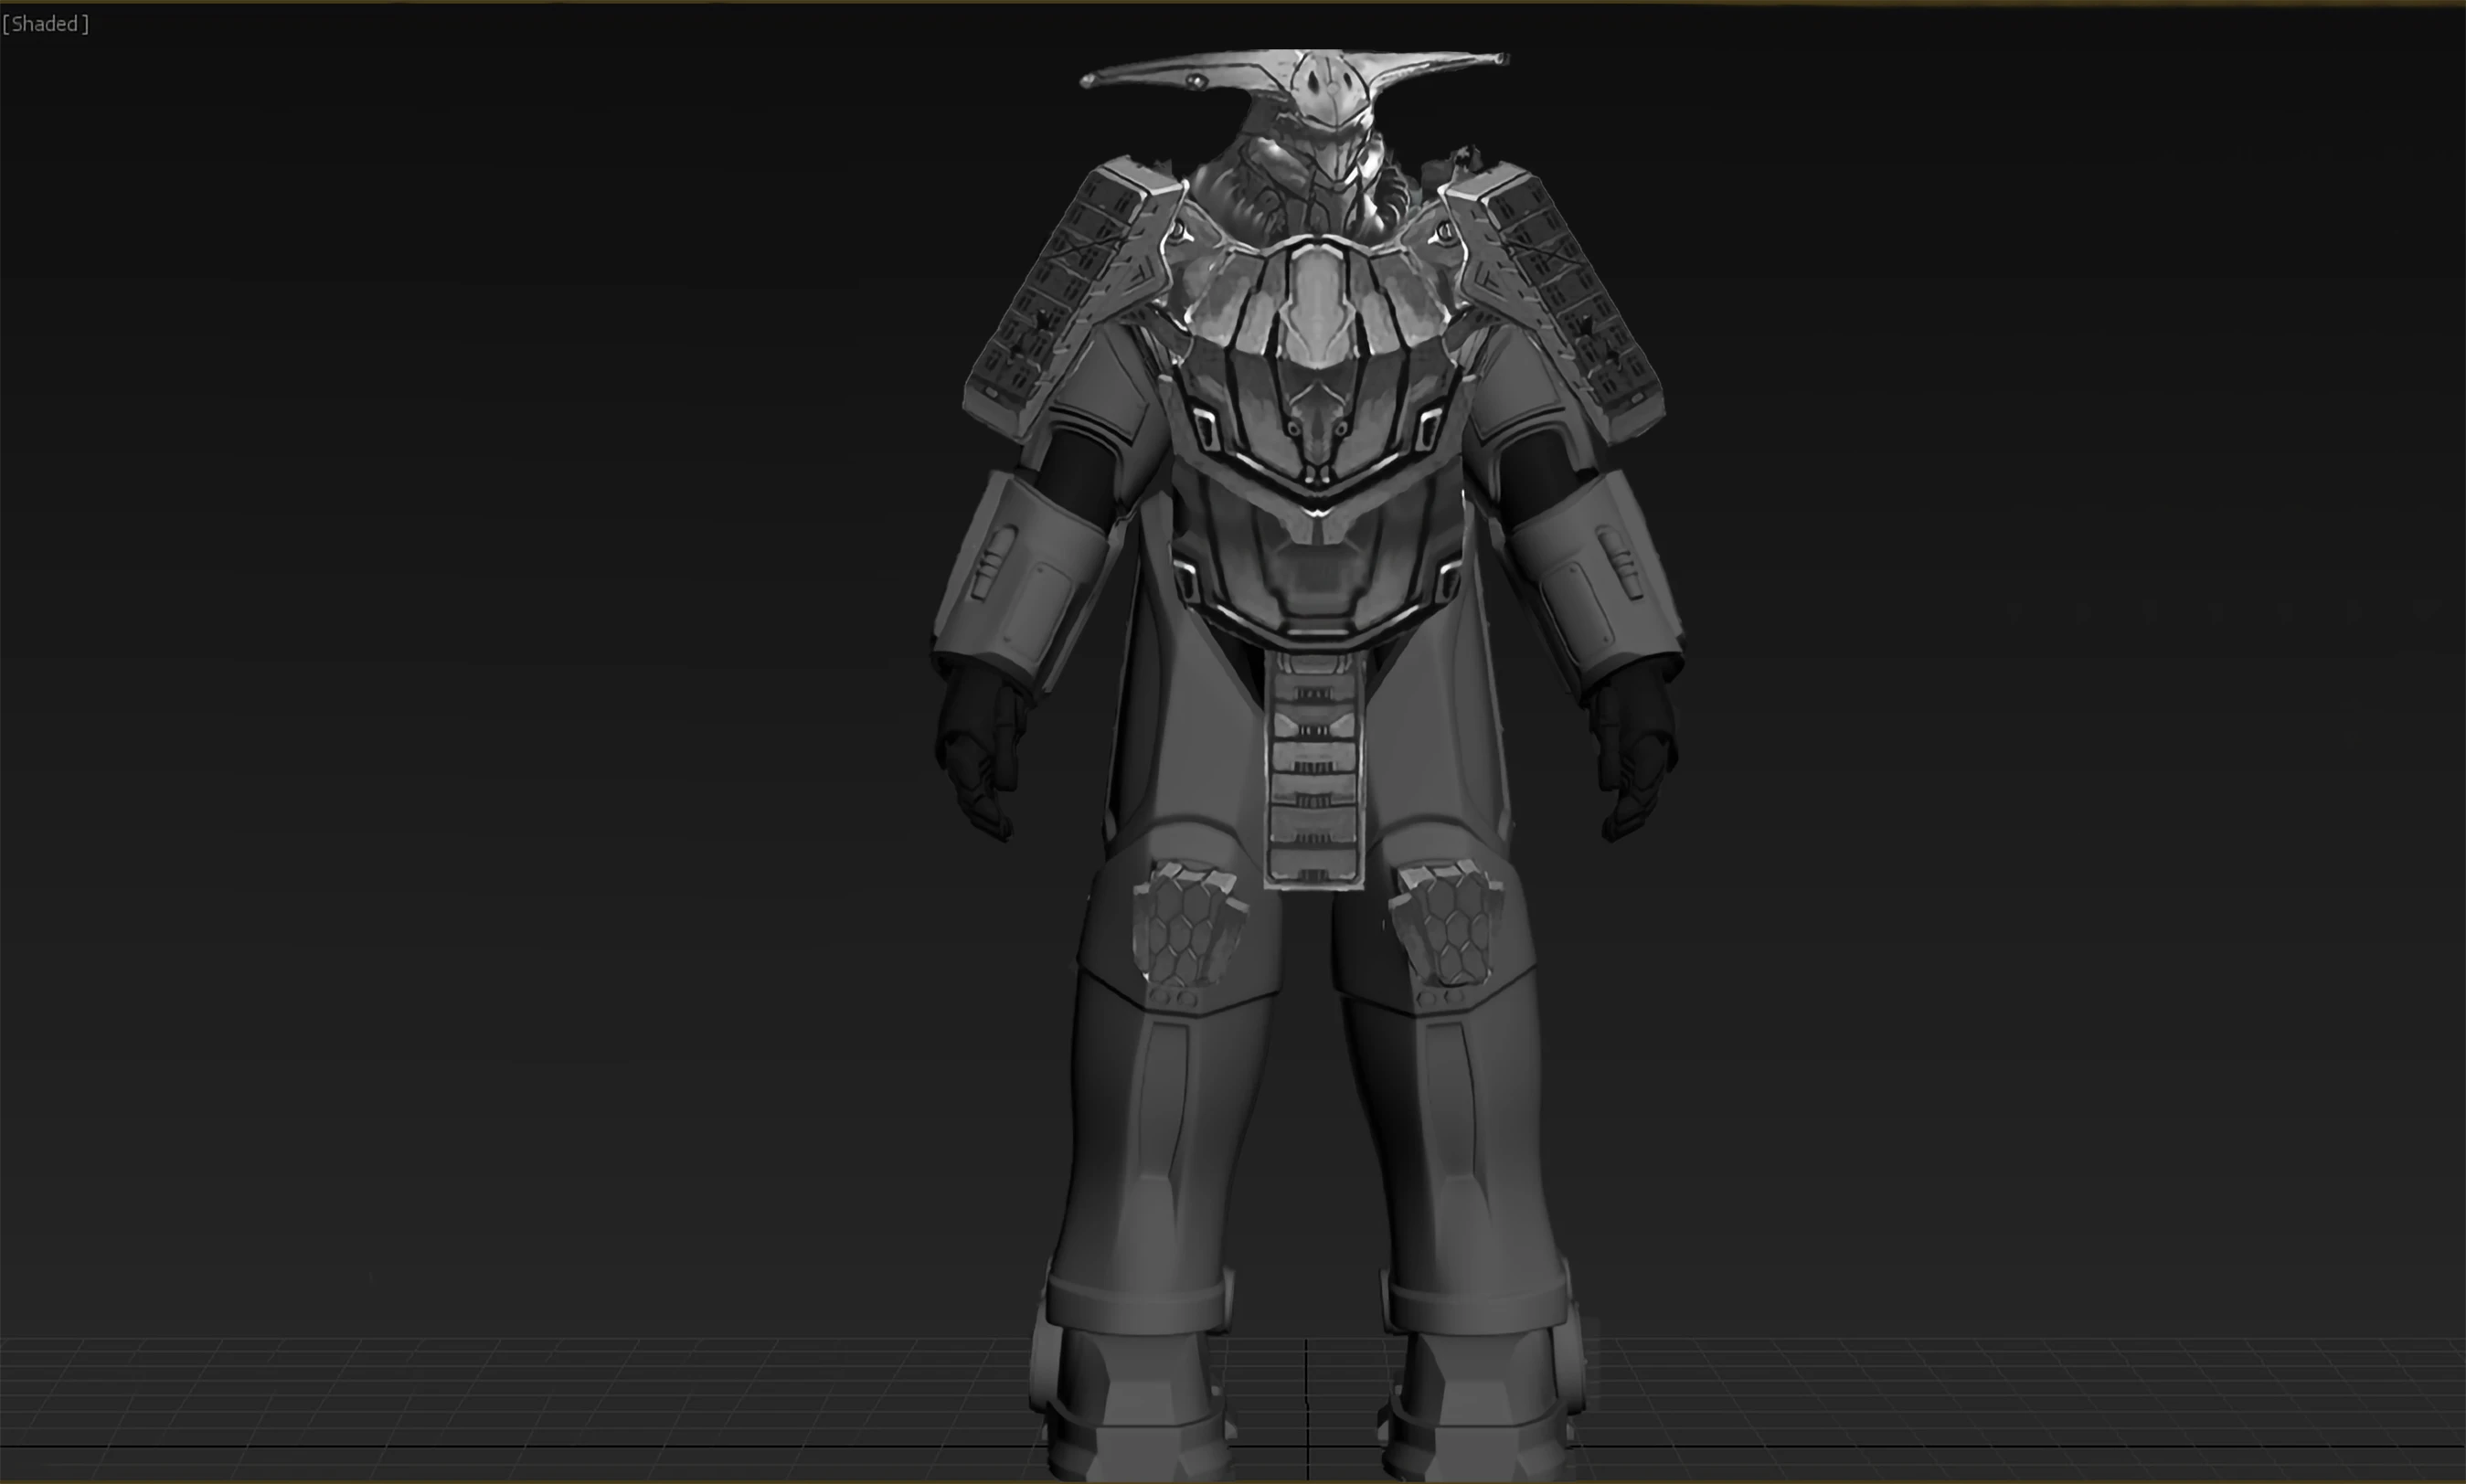 Samurai Power Armor concept.